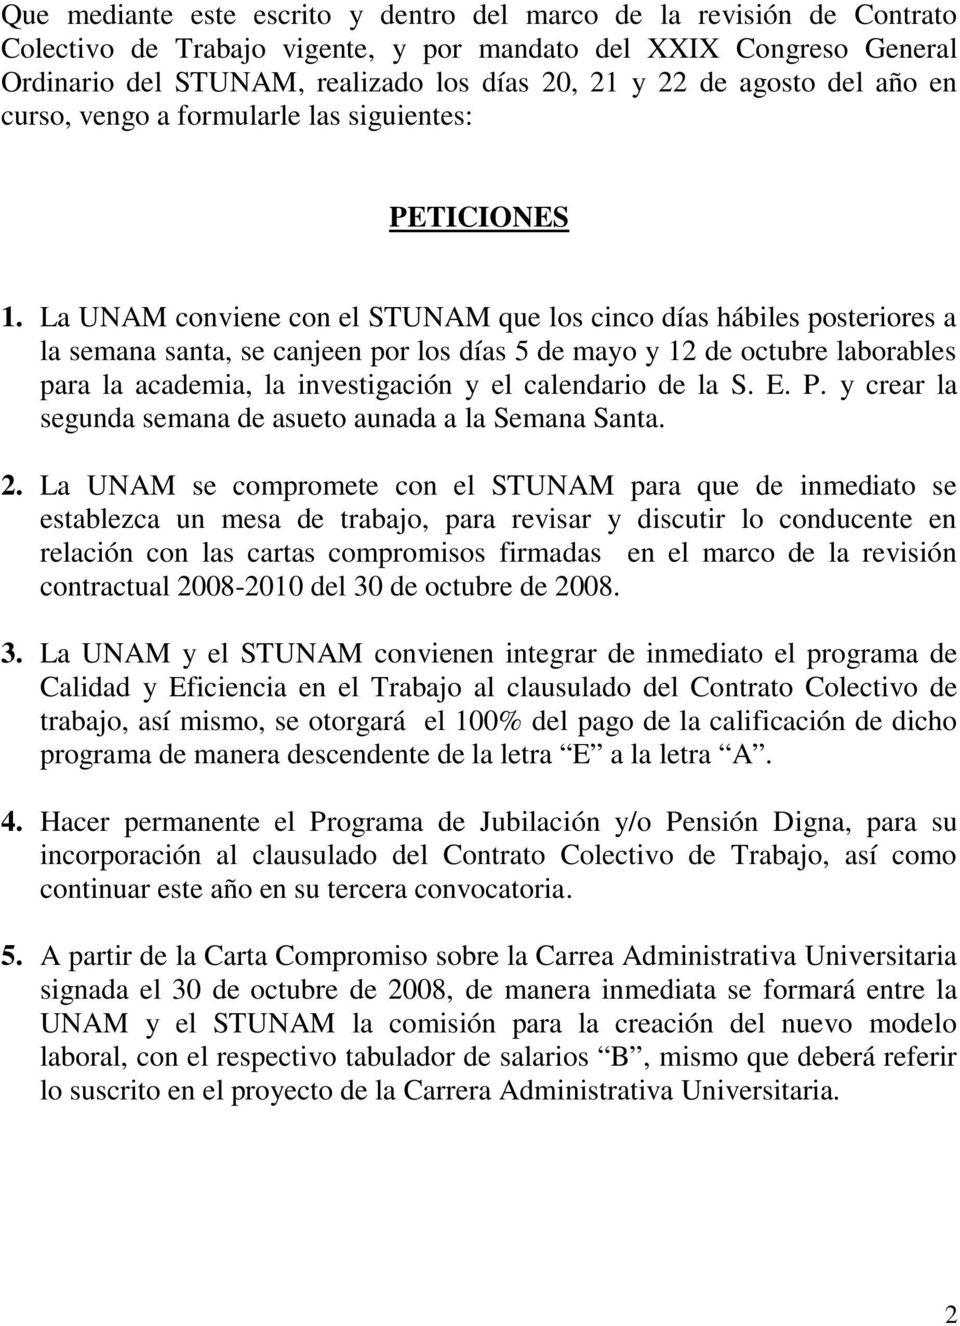 La UNAM conviene con el STUNAM que los cinco días hábiles posteriores a la semana santa, se canjeen por los días 5 de mayo y 12 de octubre laborables para la academia, la investigación y el